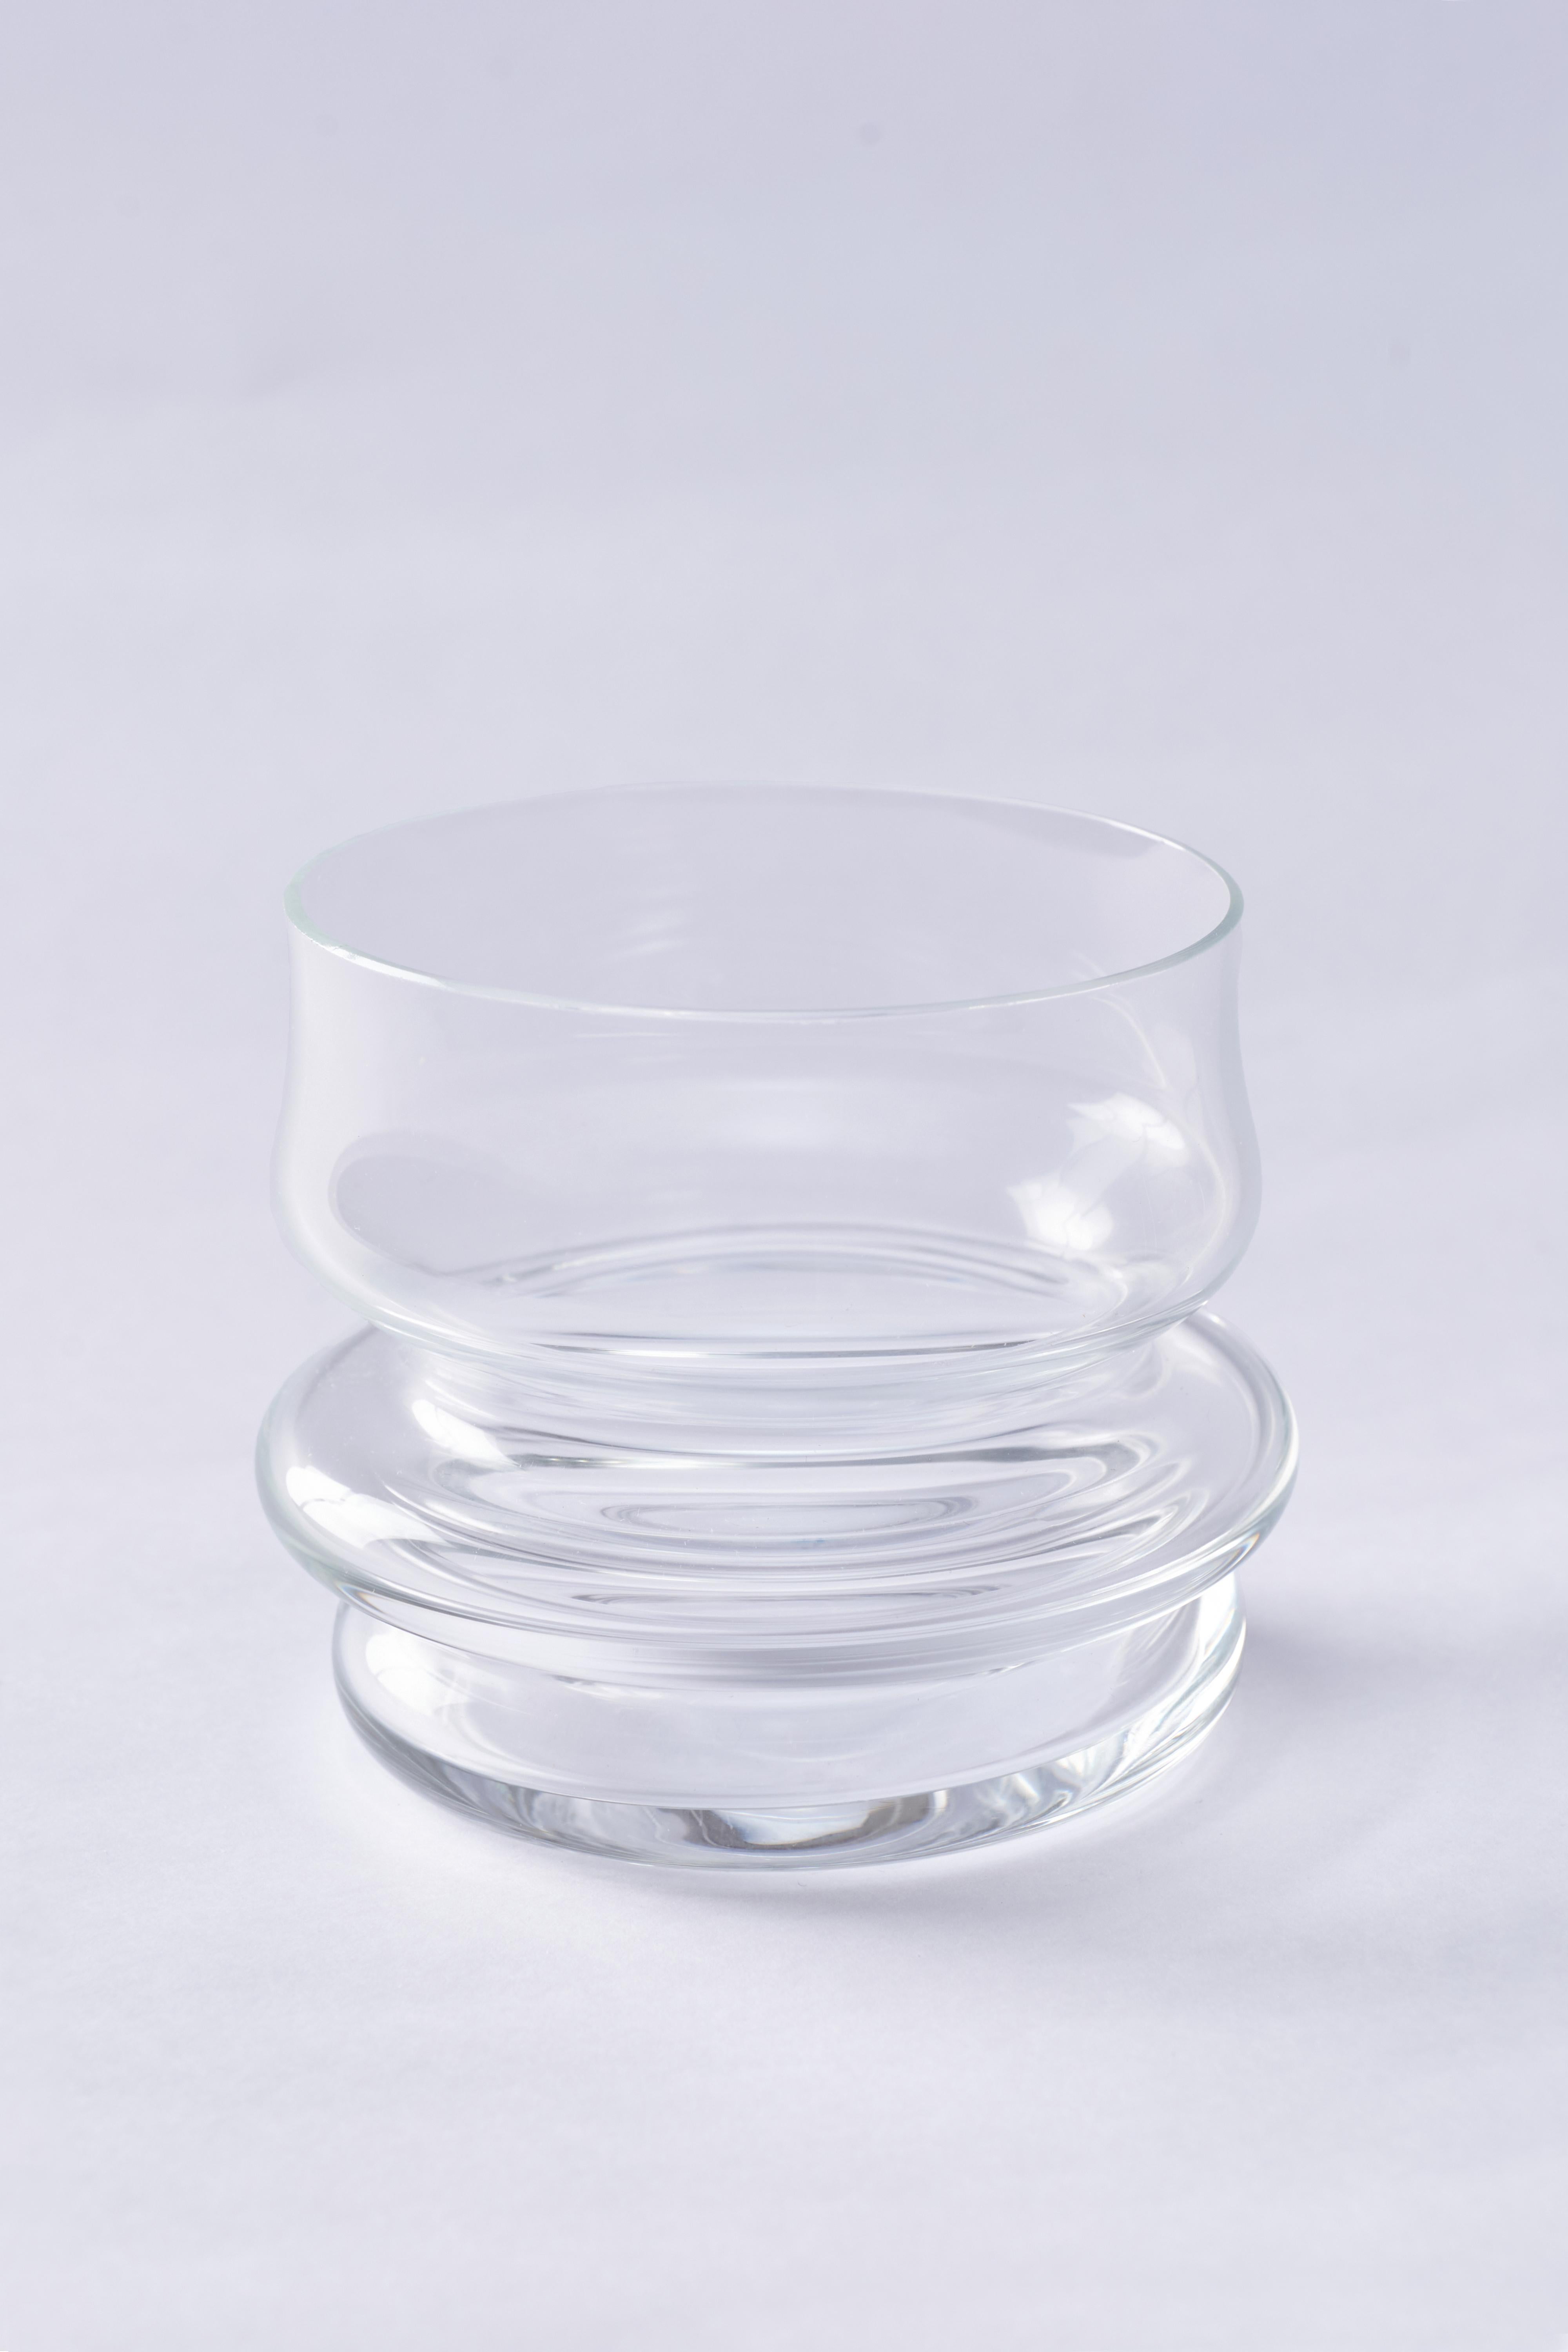 Kristall hat als Glas eine sehr interessante Eigenschaft, da seine Zusammensetzung und sein Verhalten sowohl als fest als auch als flüssig katalogisiert werden können. Er wird als 